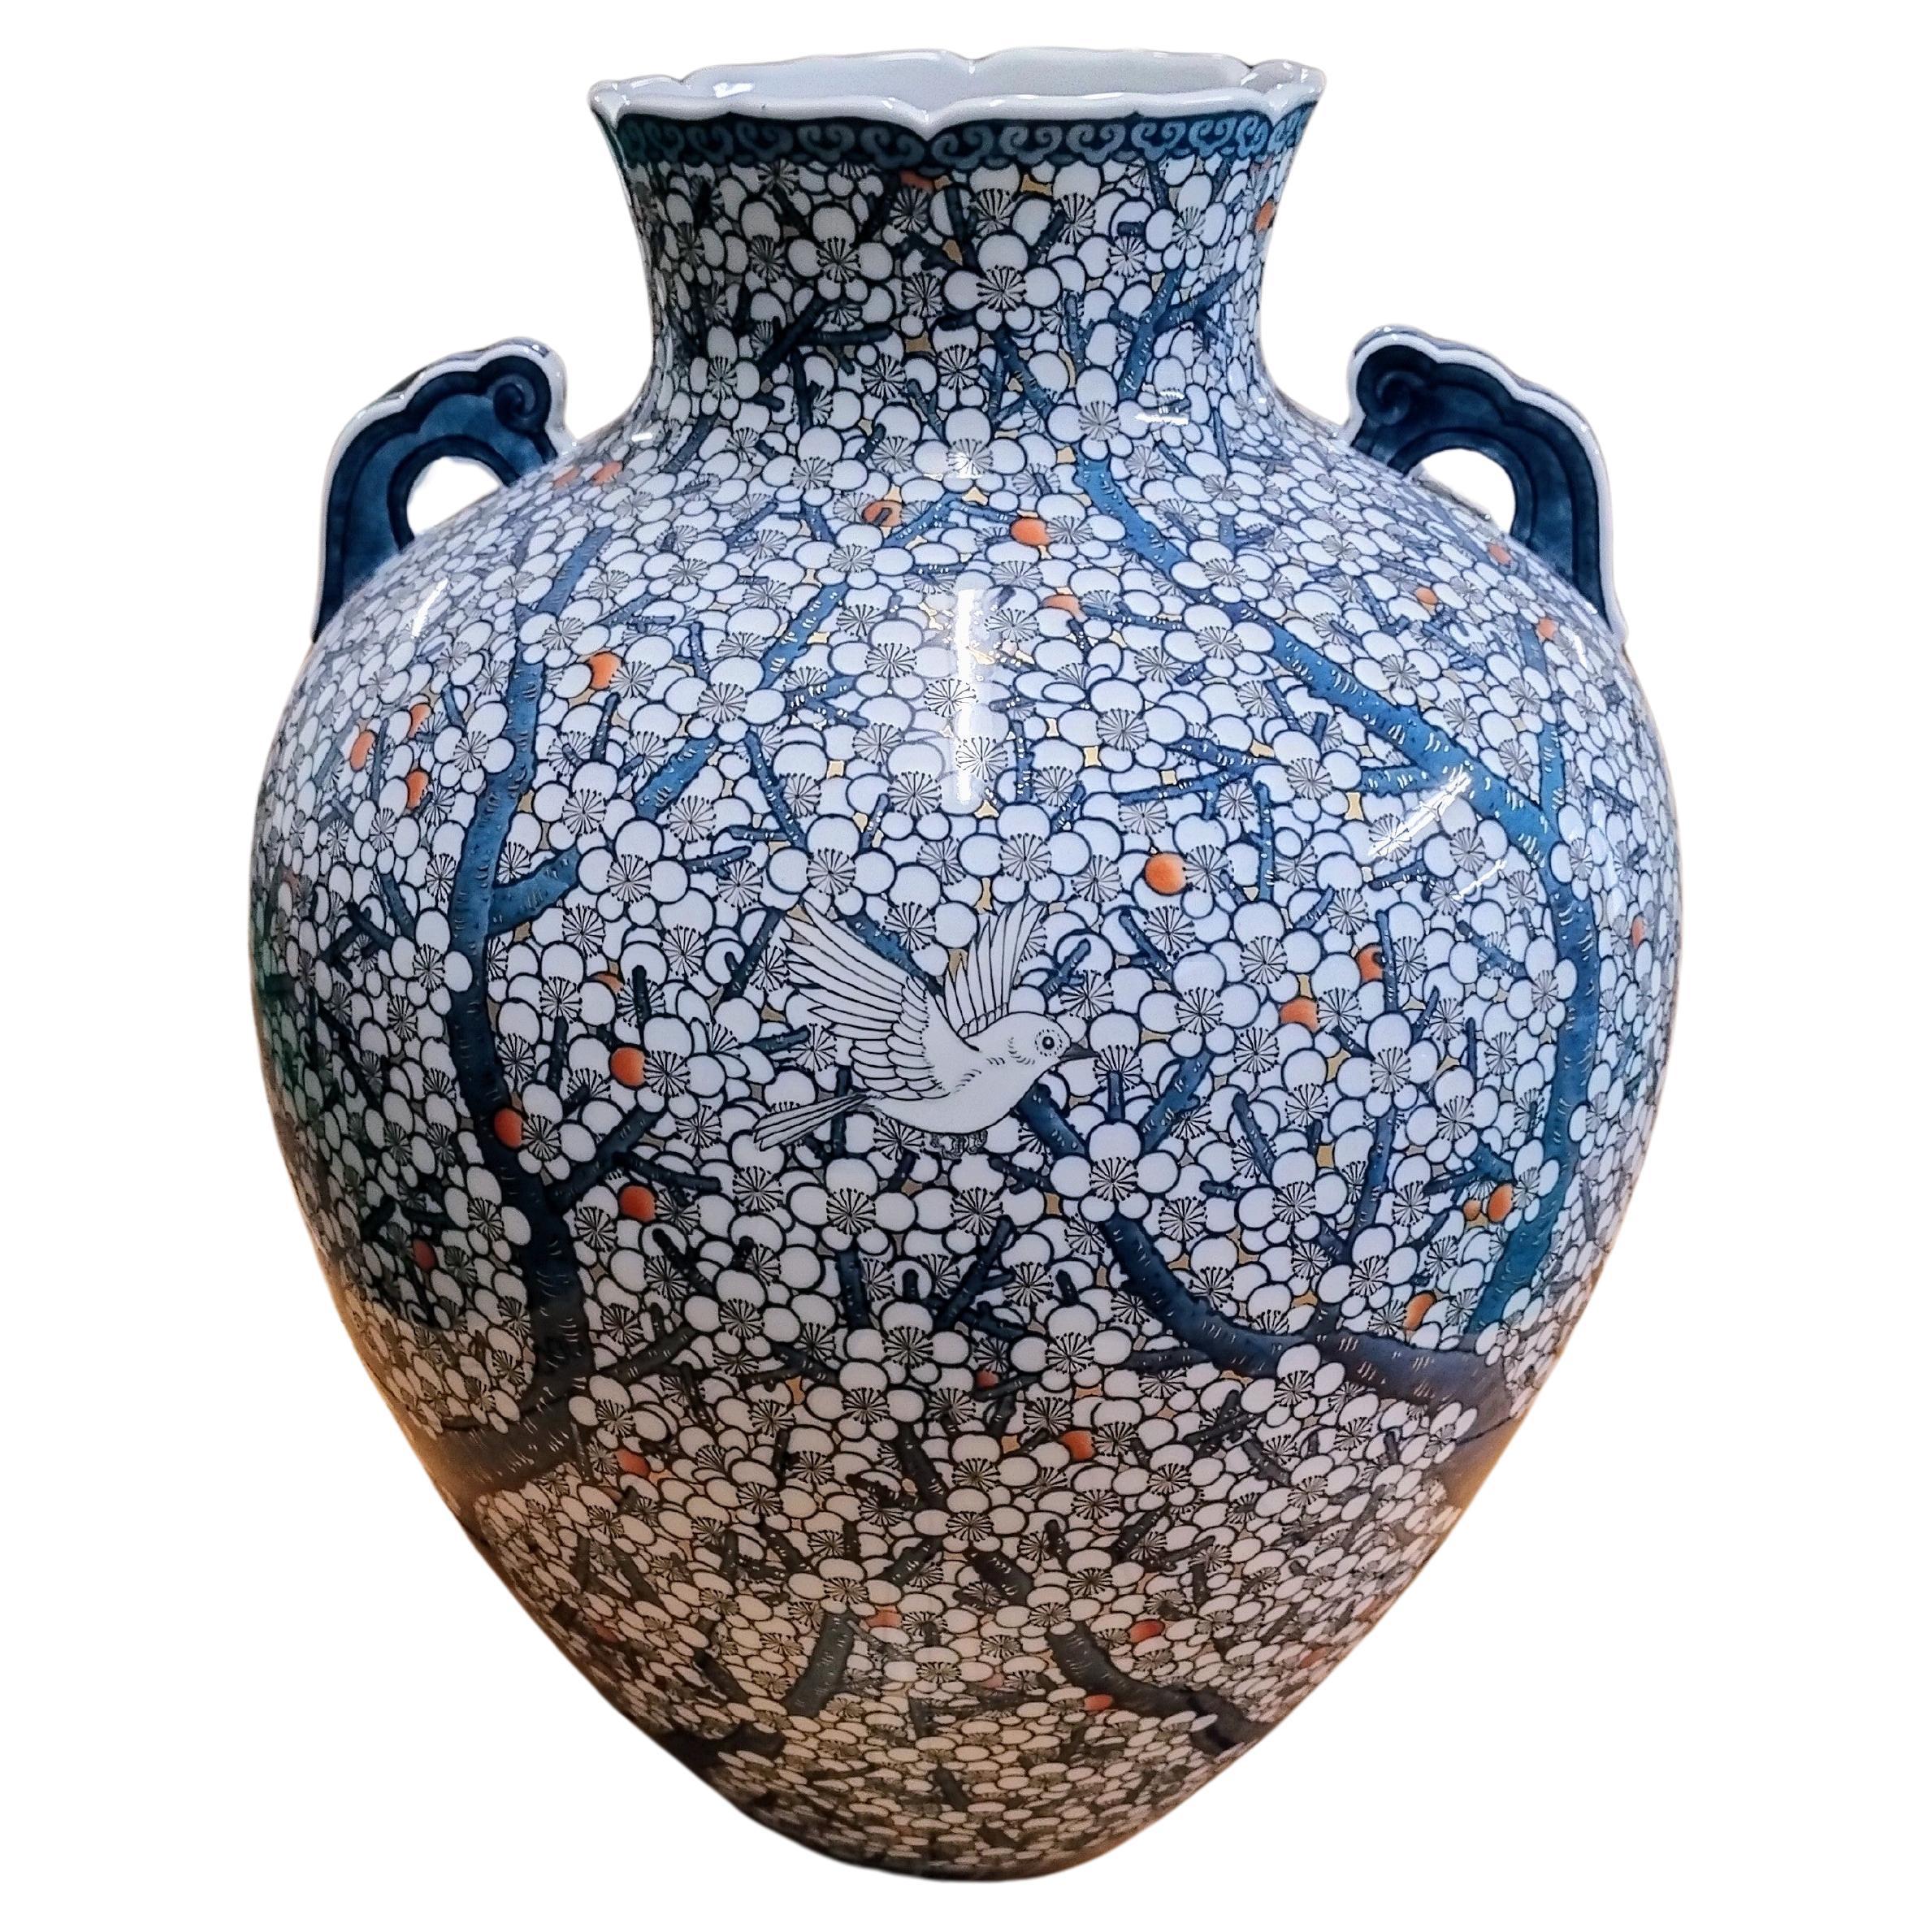 Grand vase japonais contemporain en porcelaine bleu blanc par un maître artiste, 3